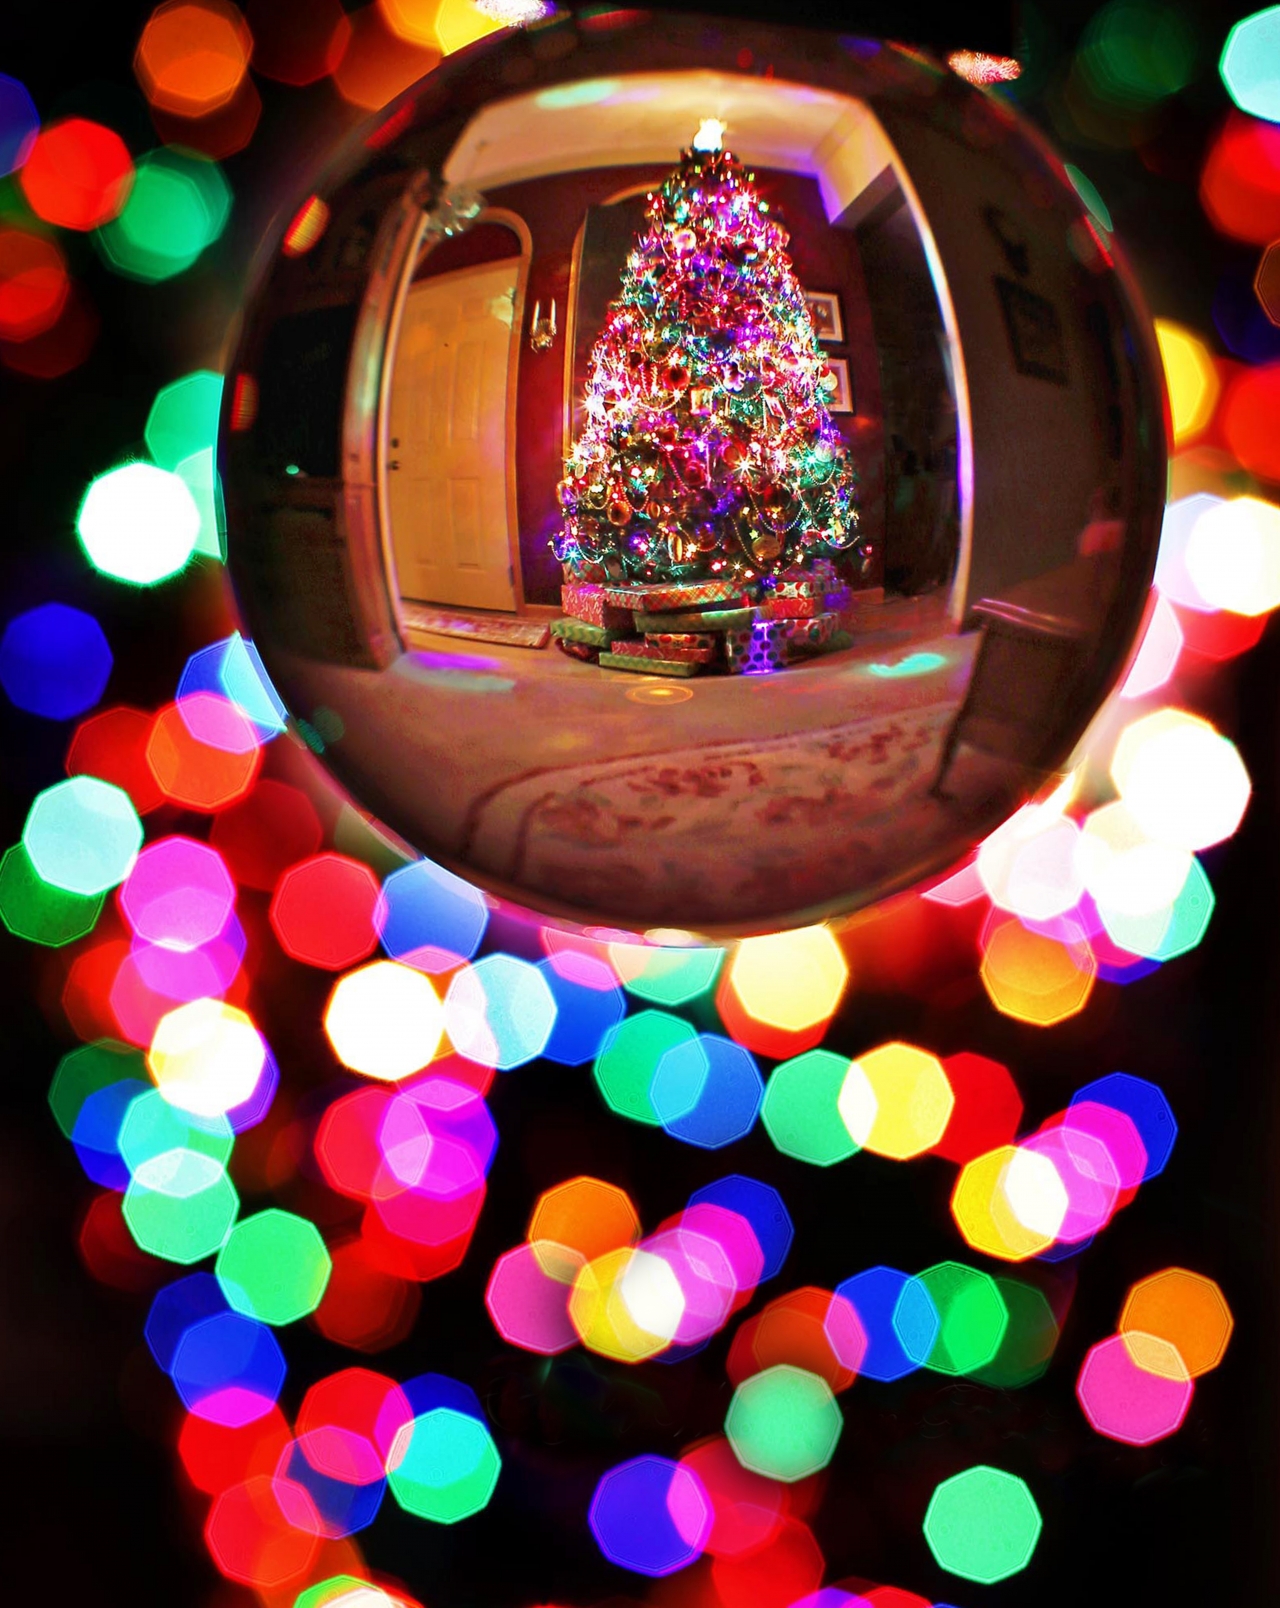 背景虚化水晶玻璃球中装饰精美的<span style='color:red;'>圣诞树</span>高清图片下载